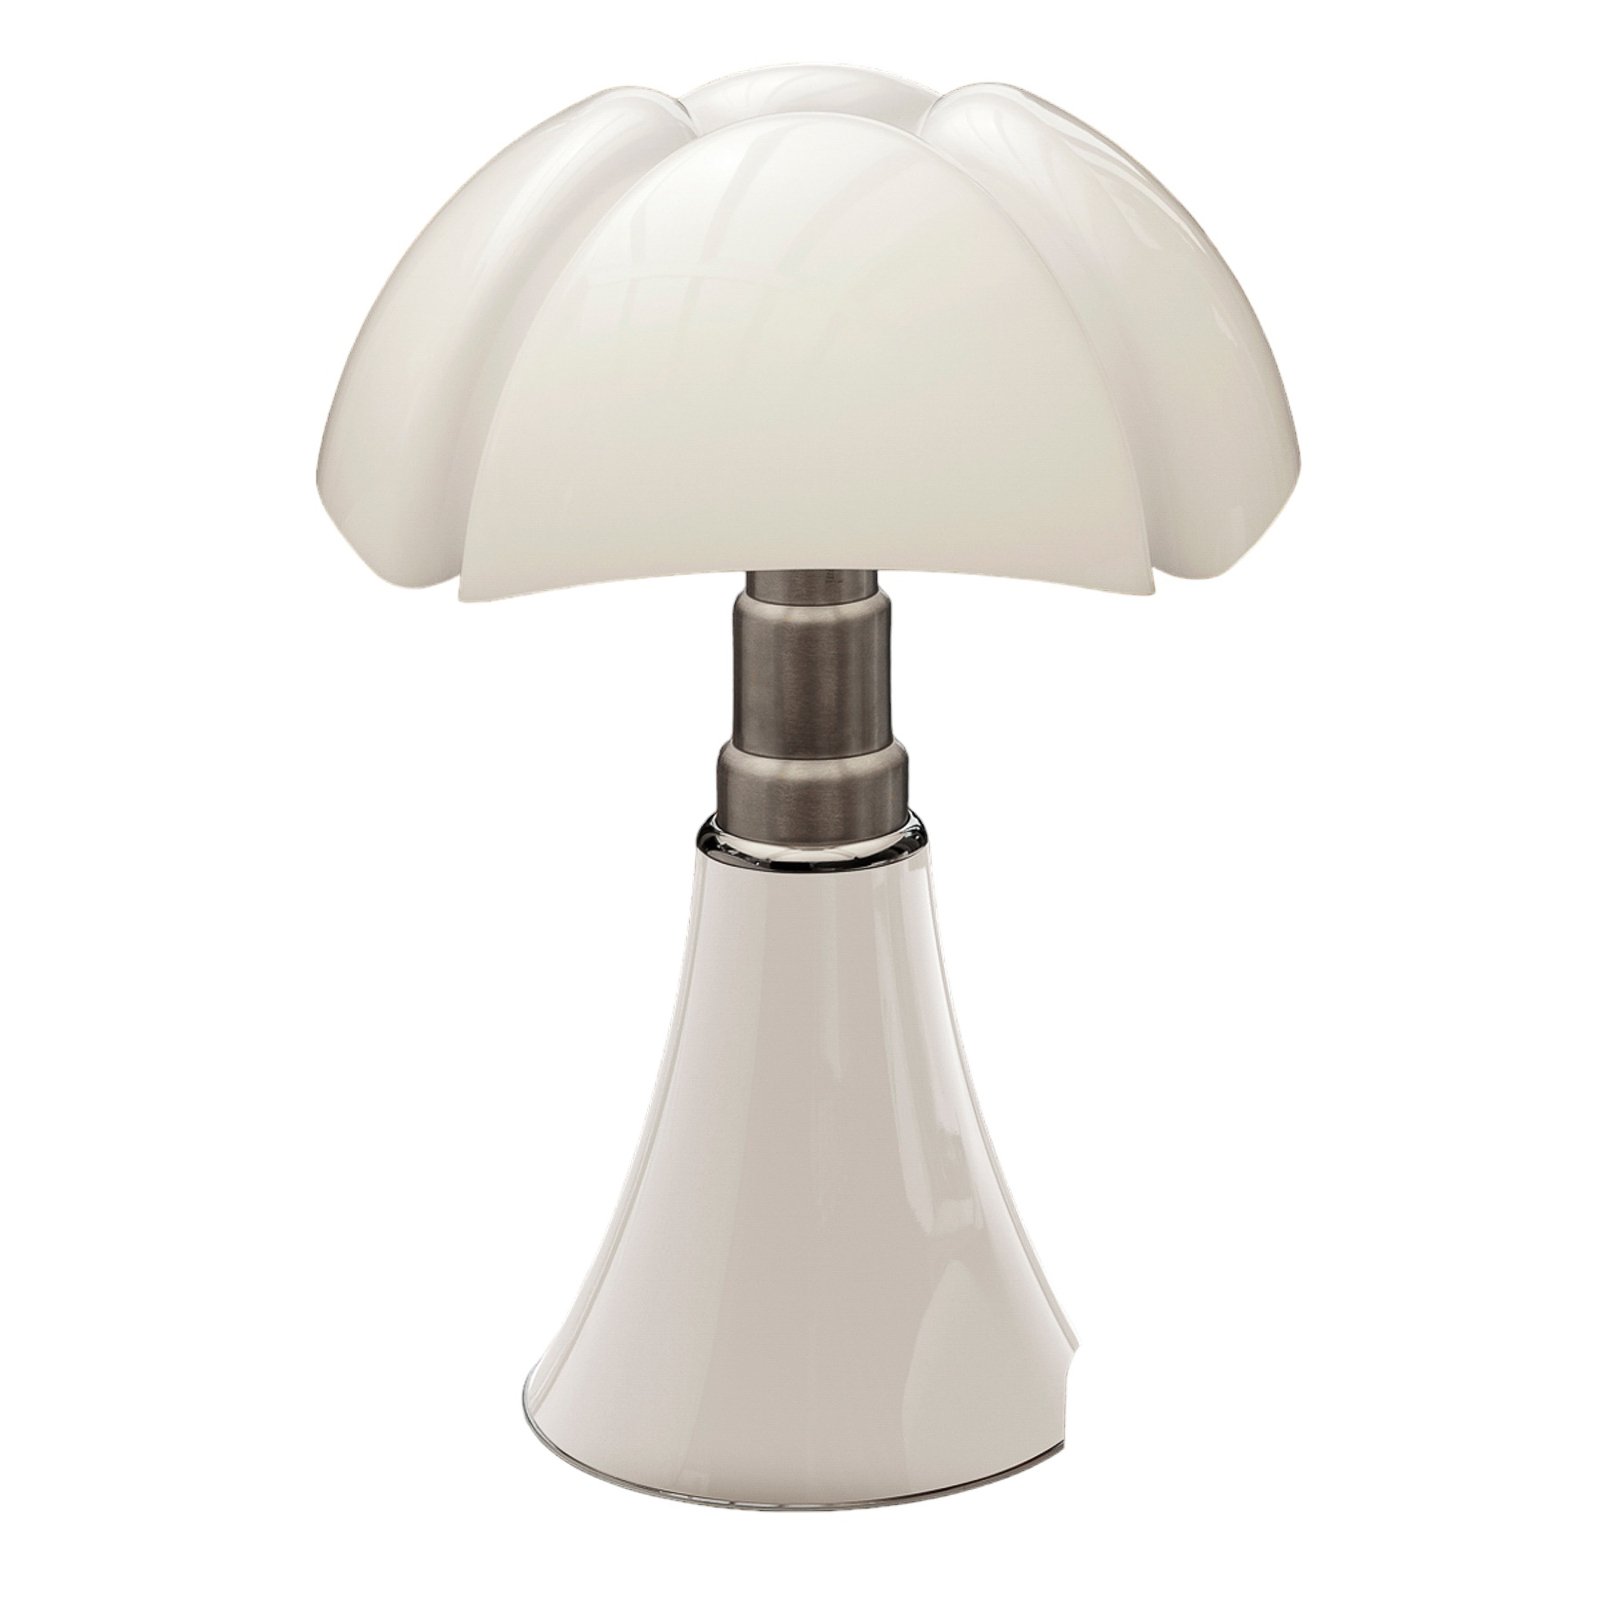 Højdeindstillelig bordlampe Pipistrello, i hvid